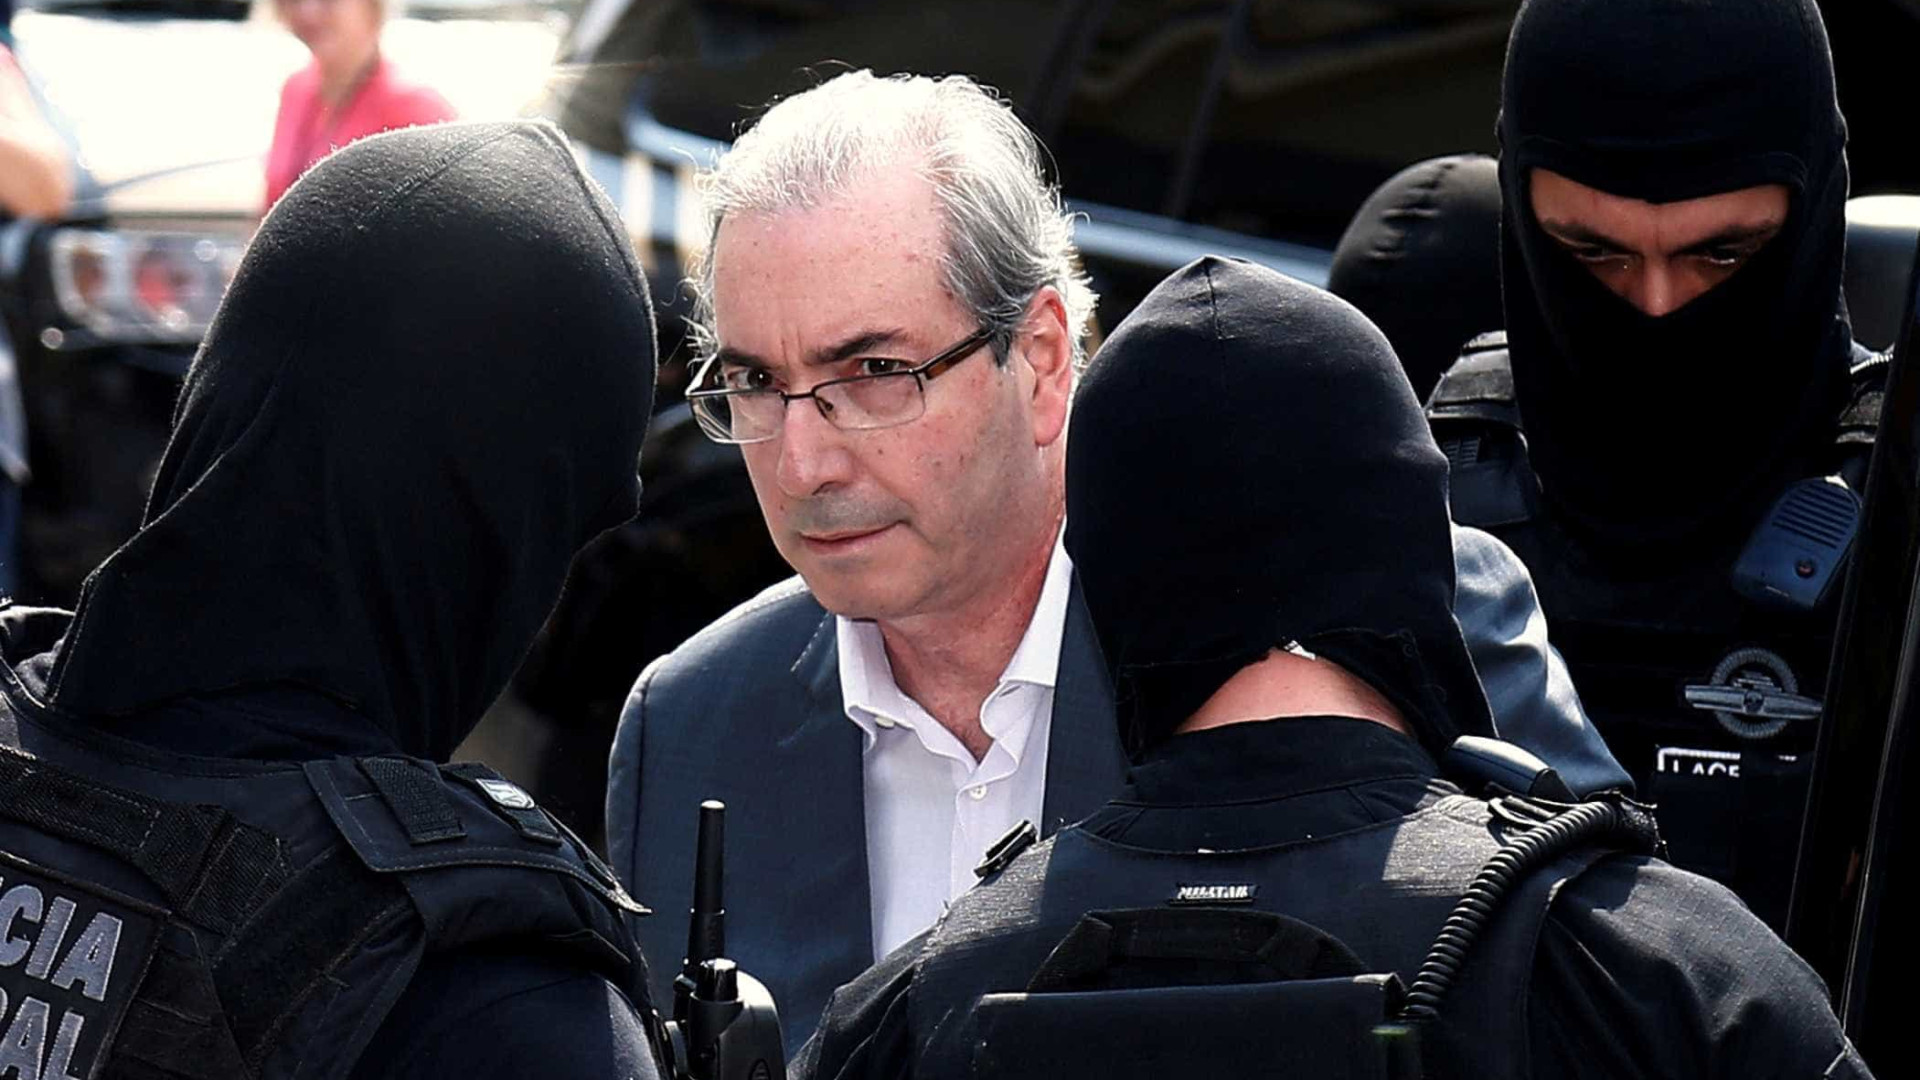 Na prisão, Cunha critica ex-aliados que
disputam presidência da Câmara